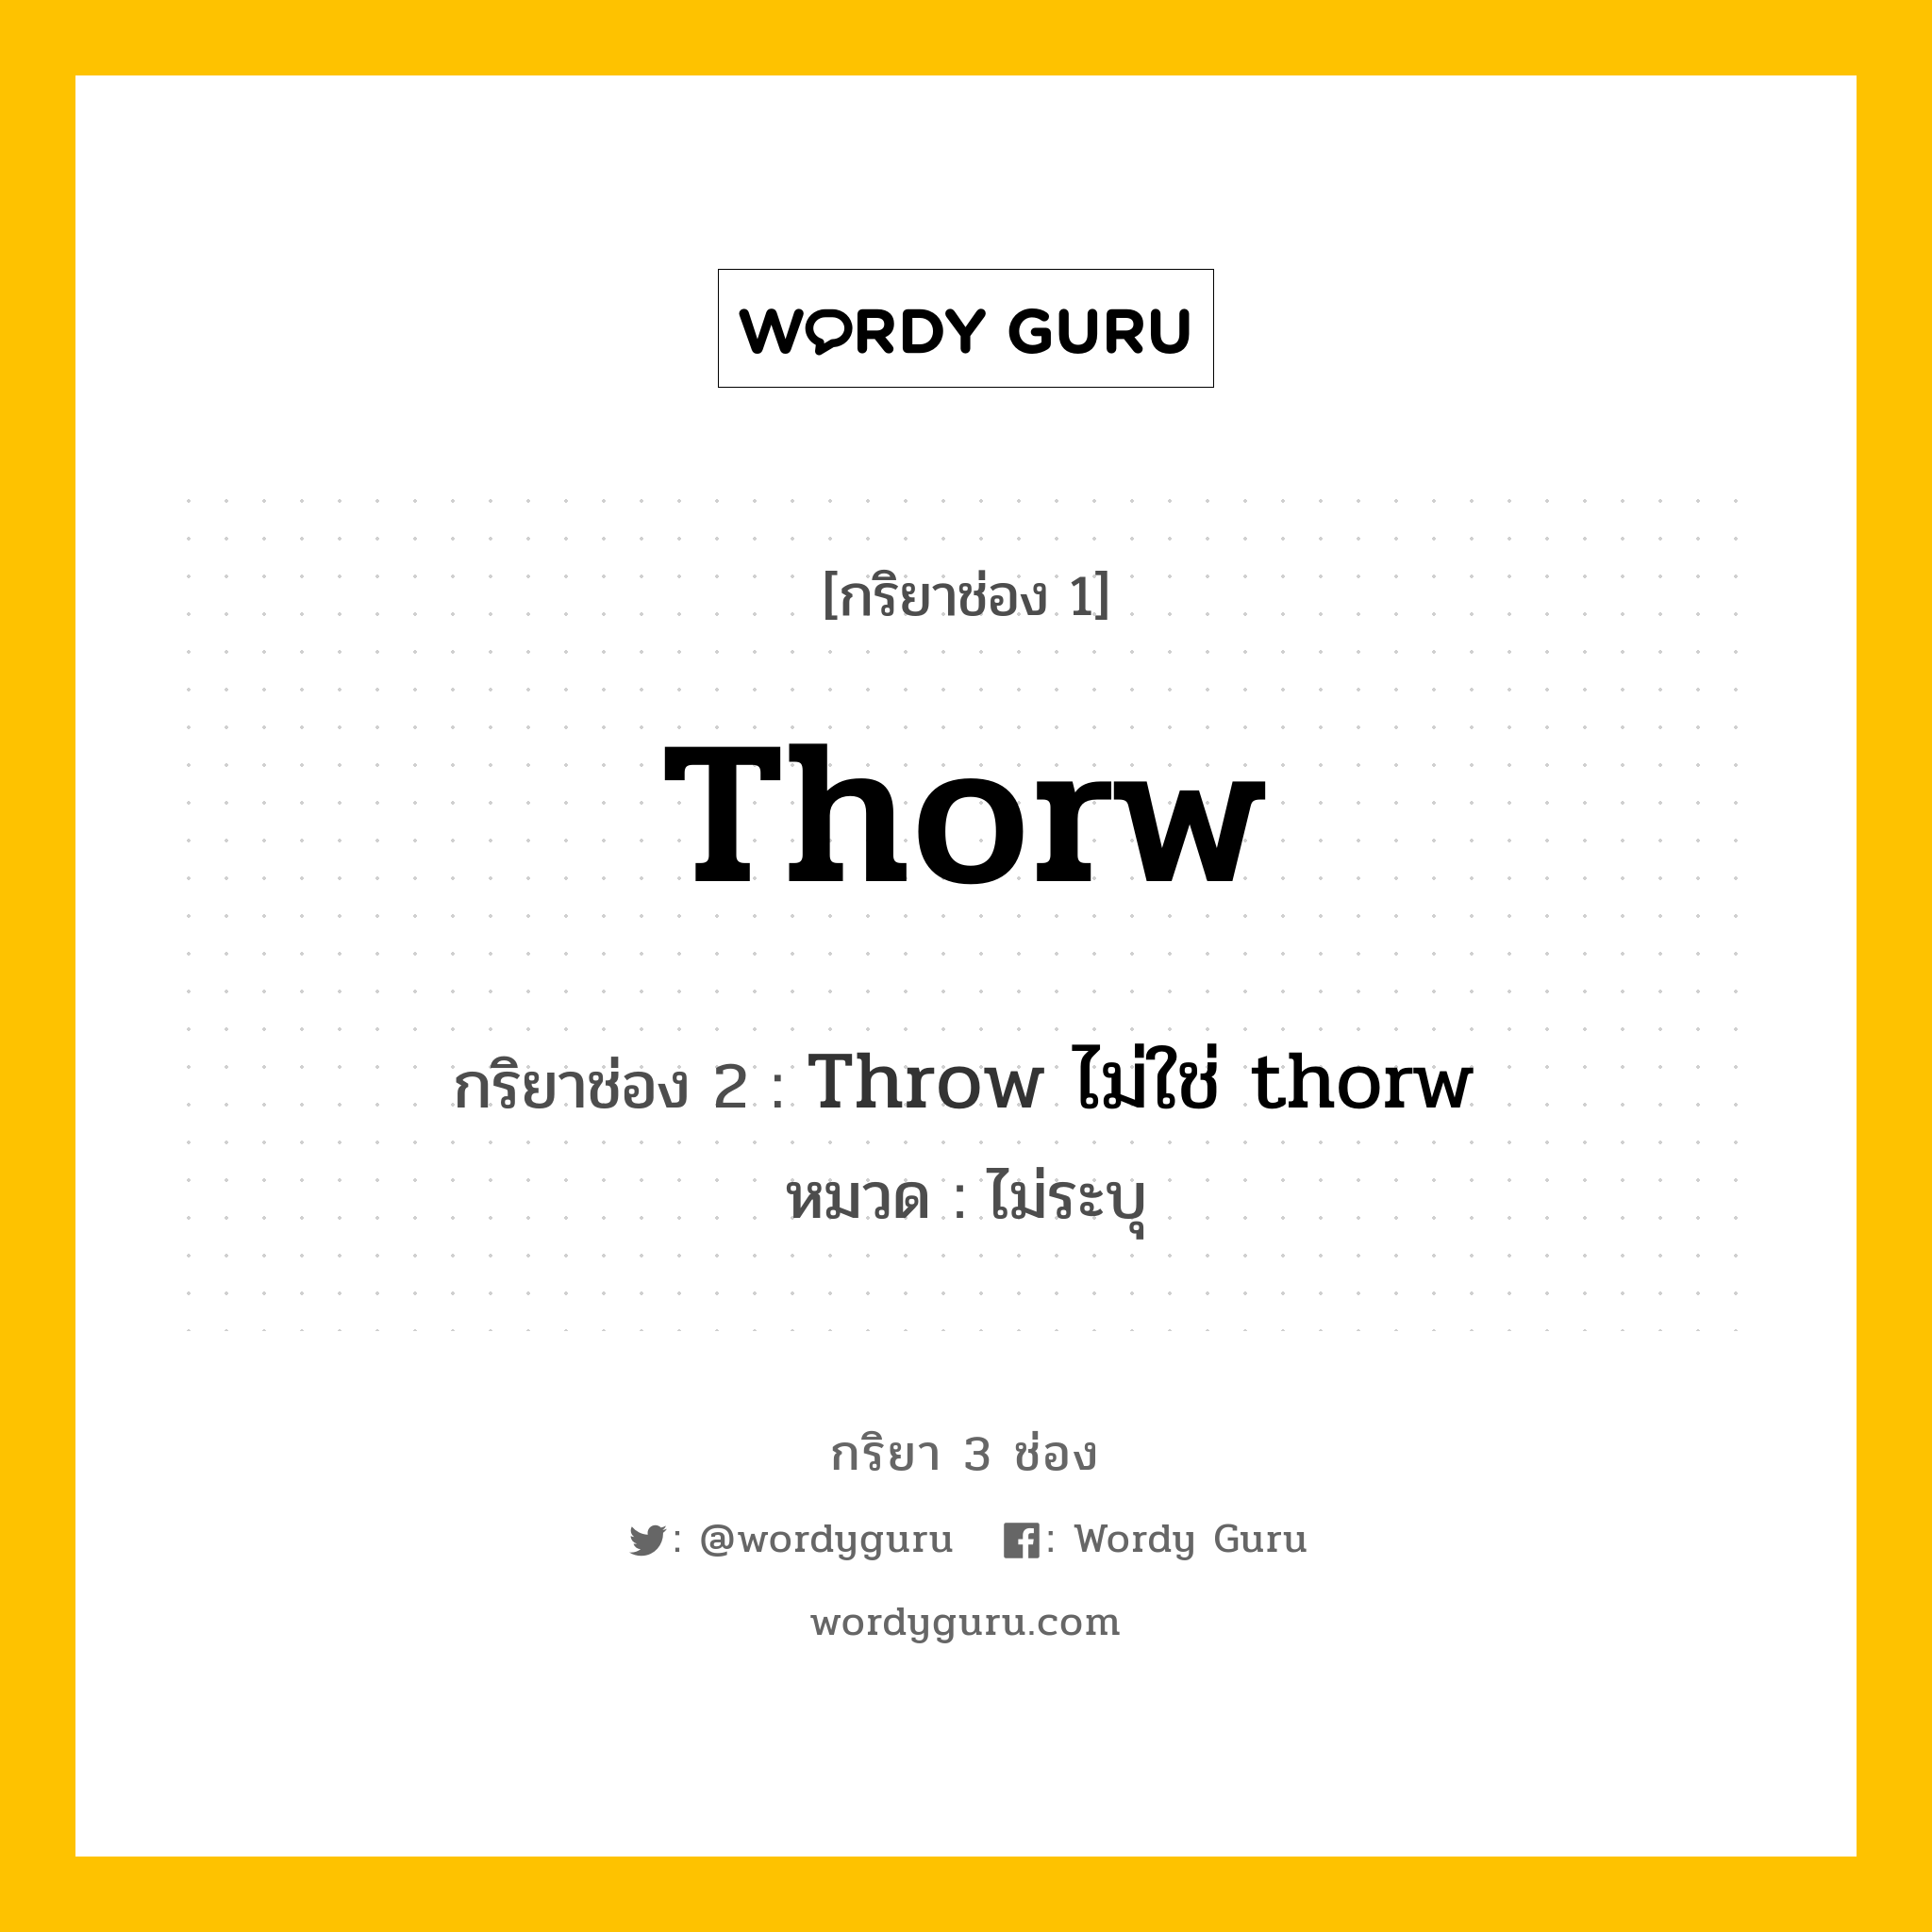 กริยา 3 ช่อง ของ Thorw คืออะไร? มาดูคำอ่าน คำแปลกันเลย, กริยาช่อง 1 Thorw กริยาช่อง 2 Throw ไม่ใช่ thorw หมวด ไม่ระบุ หมวด ไม่ระบุ